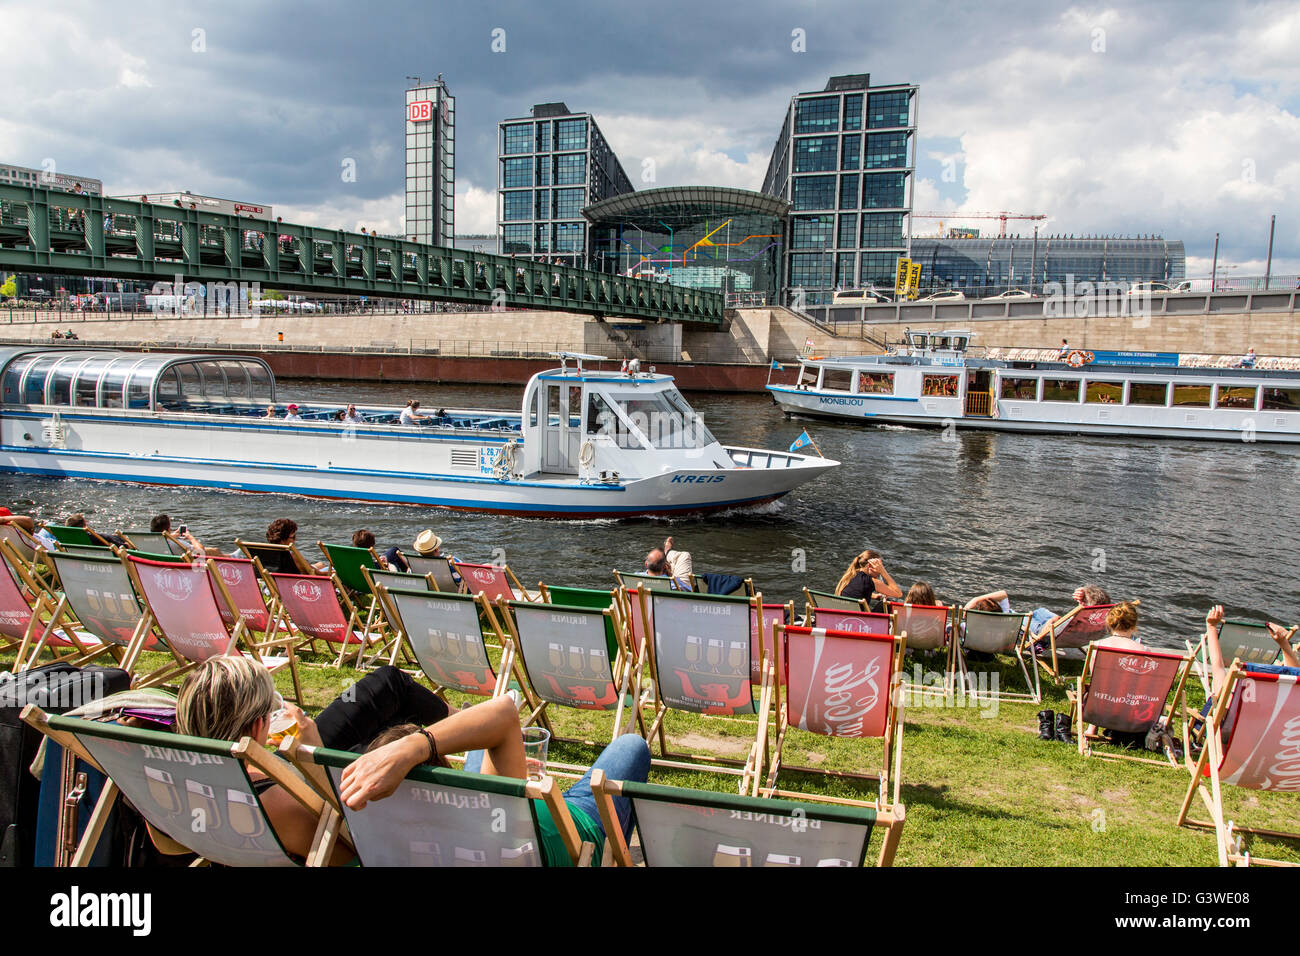 Les bateaux de croisière, voyage touristique, sur la rivière Spree, Berlin, Allemagne, du quartier du gouvernement, la capitale Beach beer garden, Banque D'Images